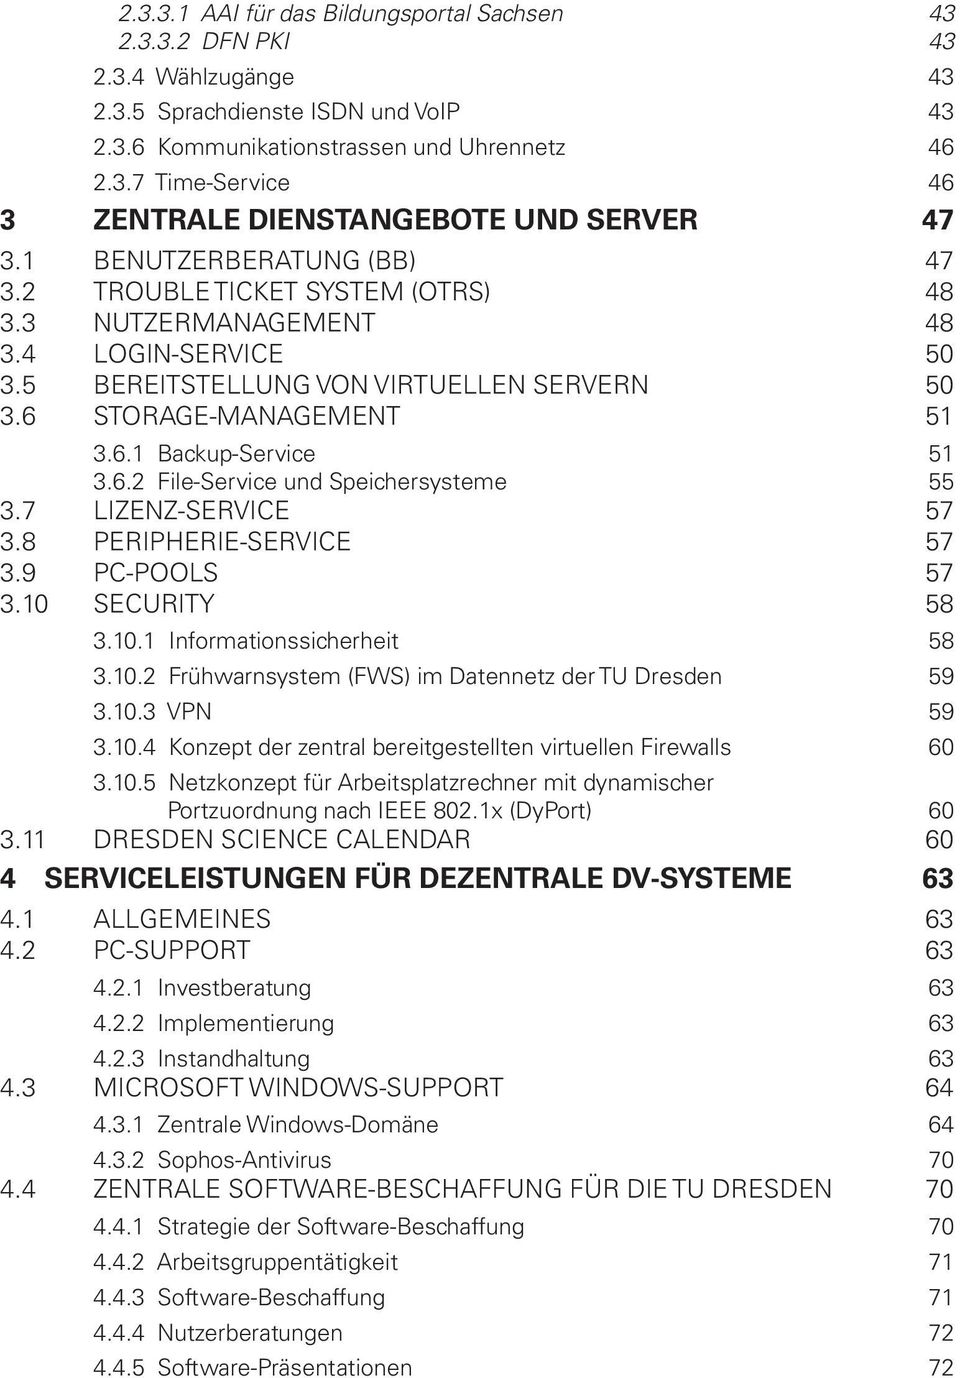 6.2 File-Service und Speichersysteme 55 3.7 LIZENZ-SERVICE 57 3.8 PERIPHERIE-SERVICE 57 3.9 PC-POOLS 57 3.10 SECURITY 58 3.10.1 Informationssicherheit 58 3.10.2 Frühwarnsystem (FWS) im Datennetz der TU Dresden 59 3.